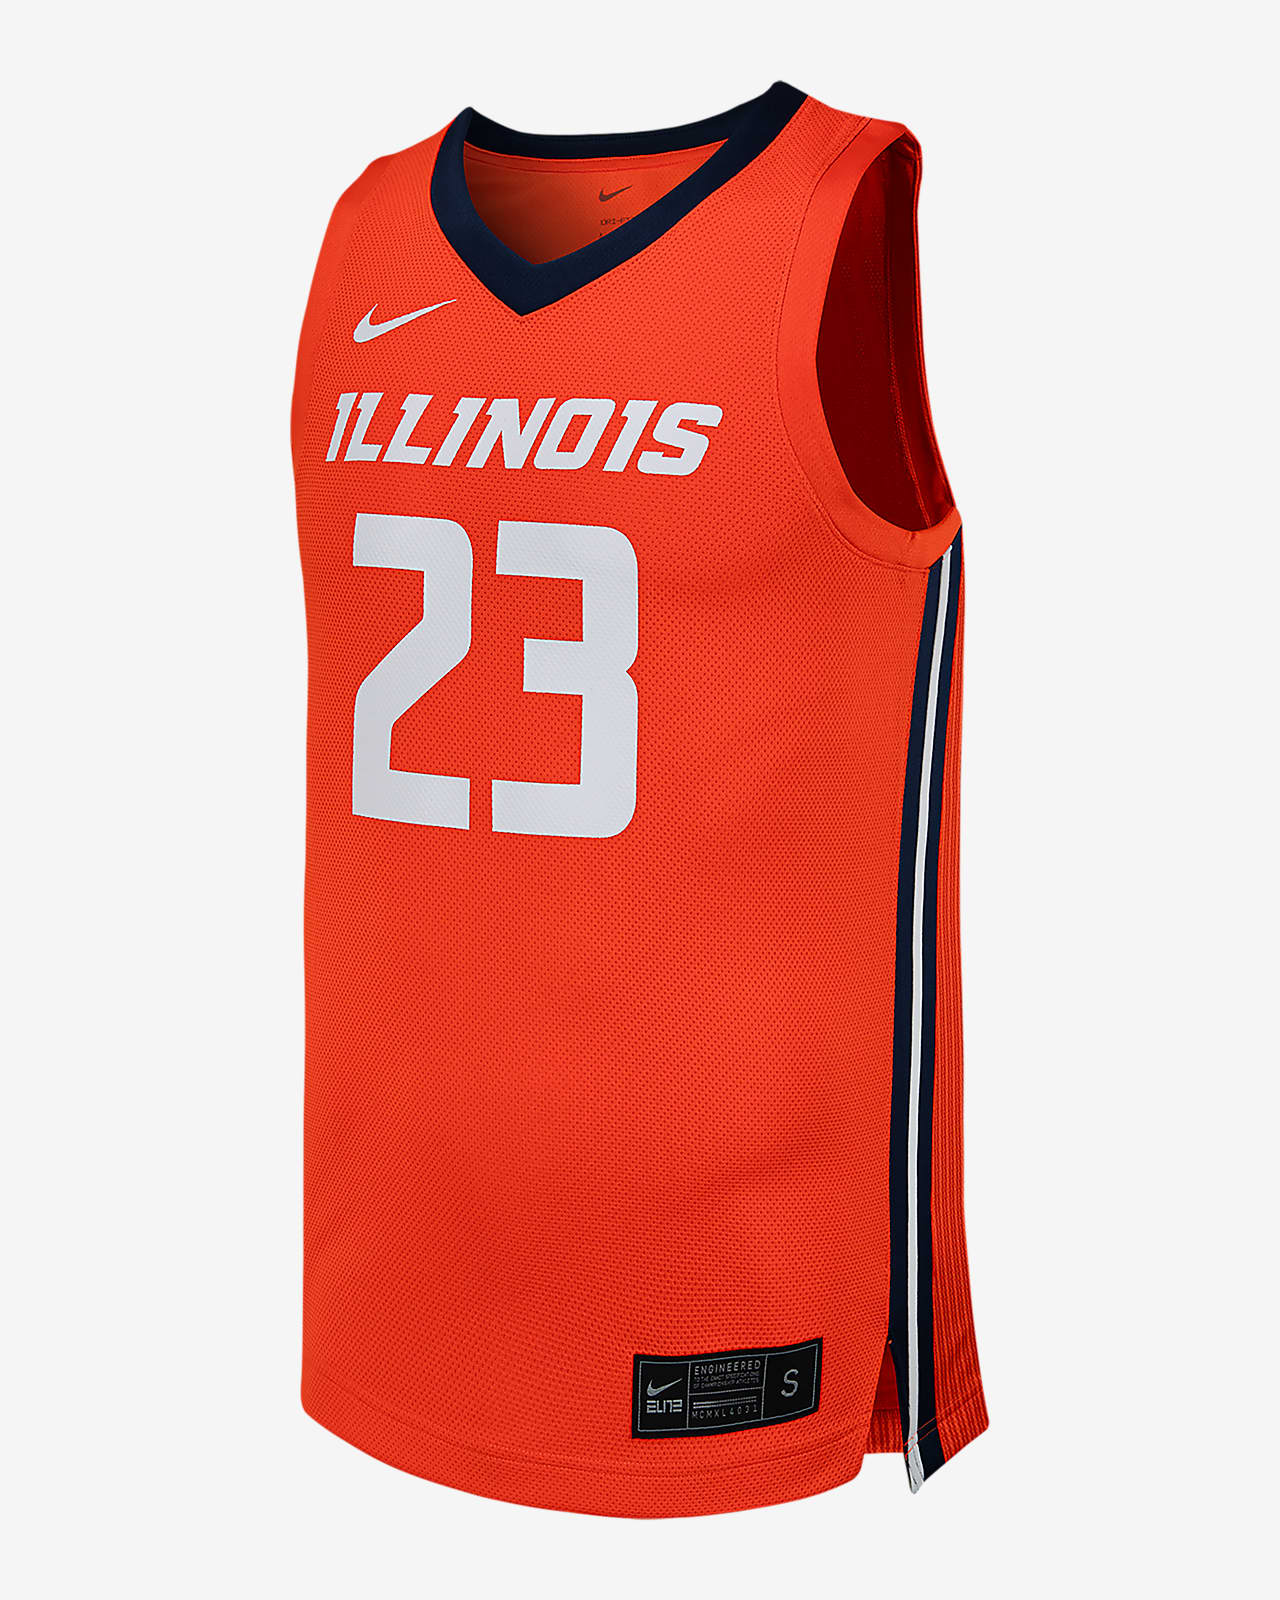 Jersey de básquetbol universitario Nike Replica para hombre Illinois